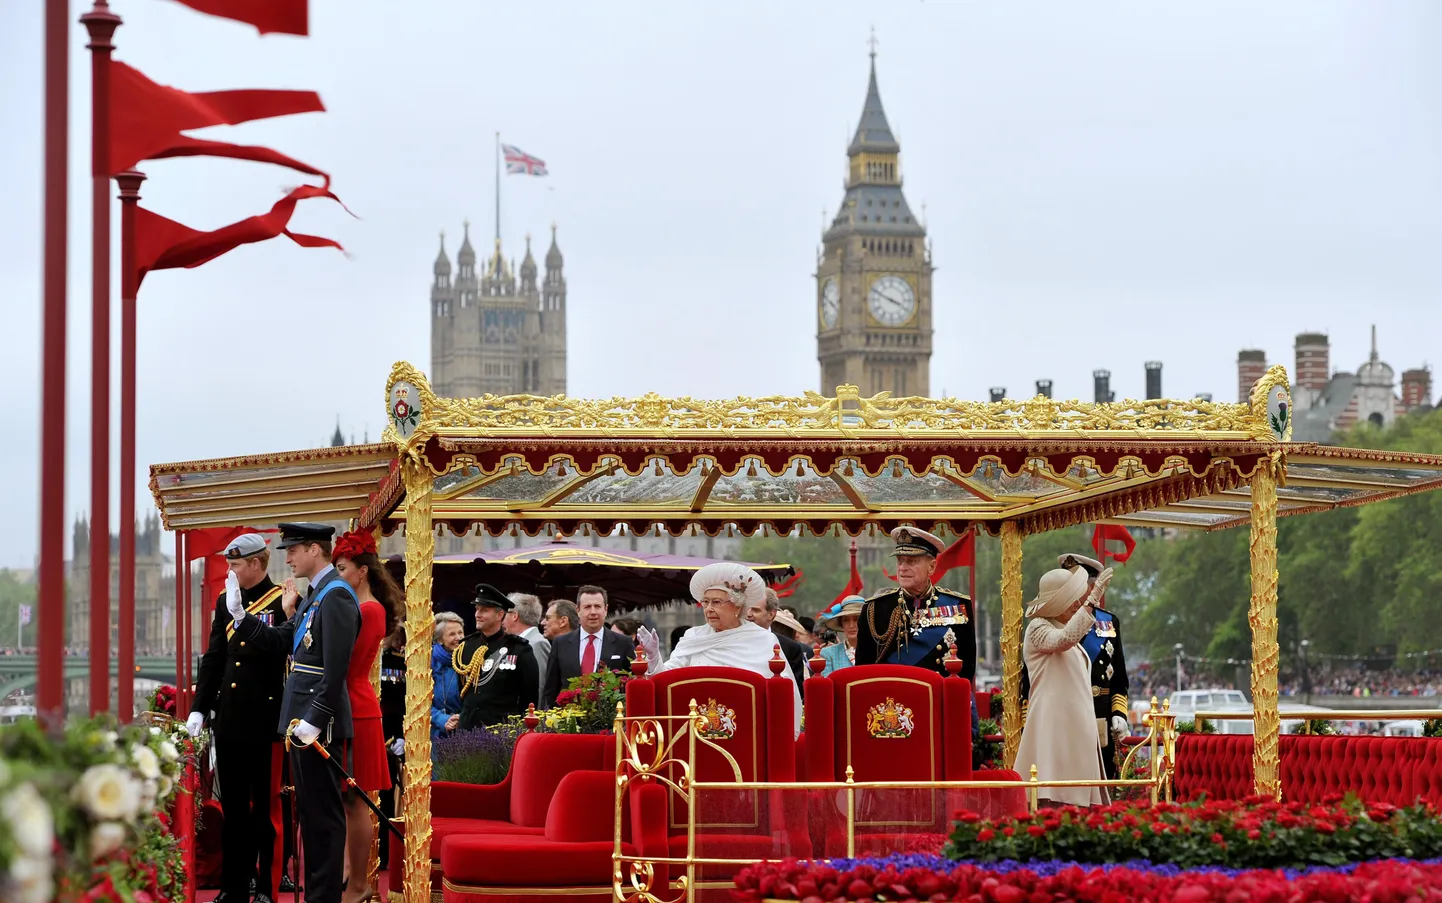 Kuninganna Elizabeth II teemantjuubeli pidustused. Tagaplaanil on Big Ben.